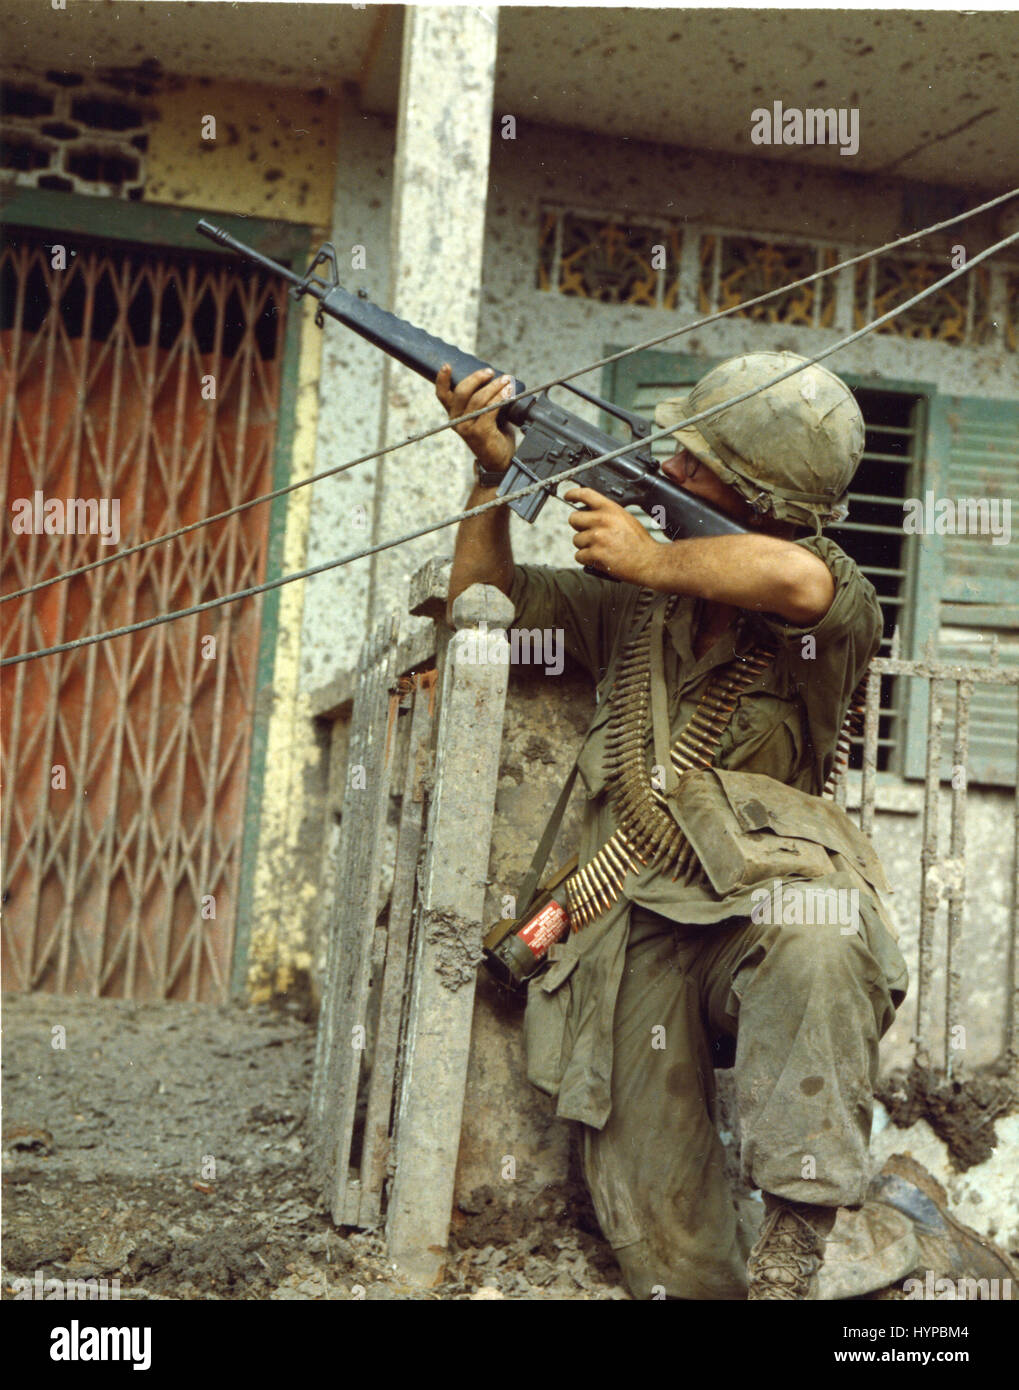 Assumendo una posizione difensiva nel corso di casa in casa a cercare, a Saigon, 1968. Foto Stock